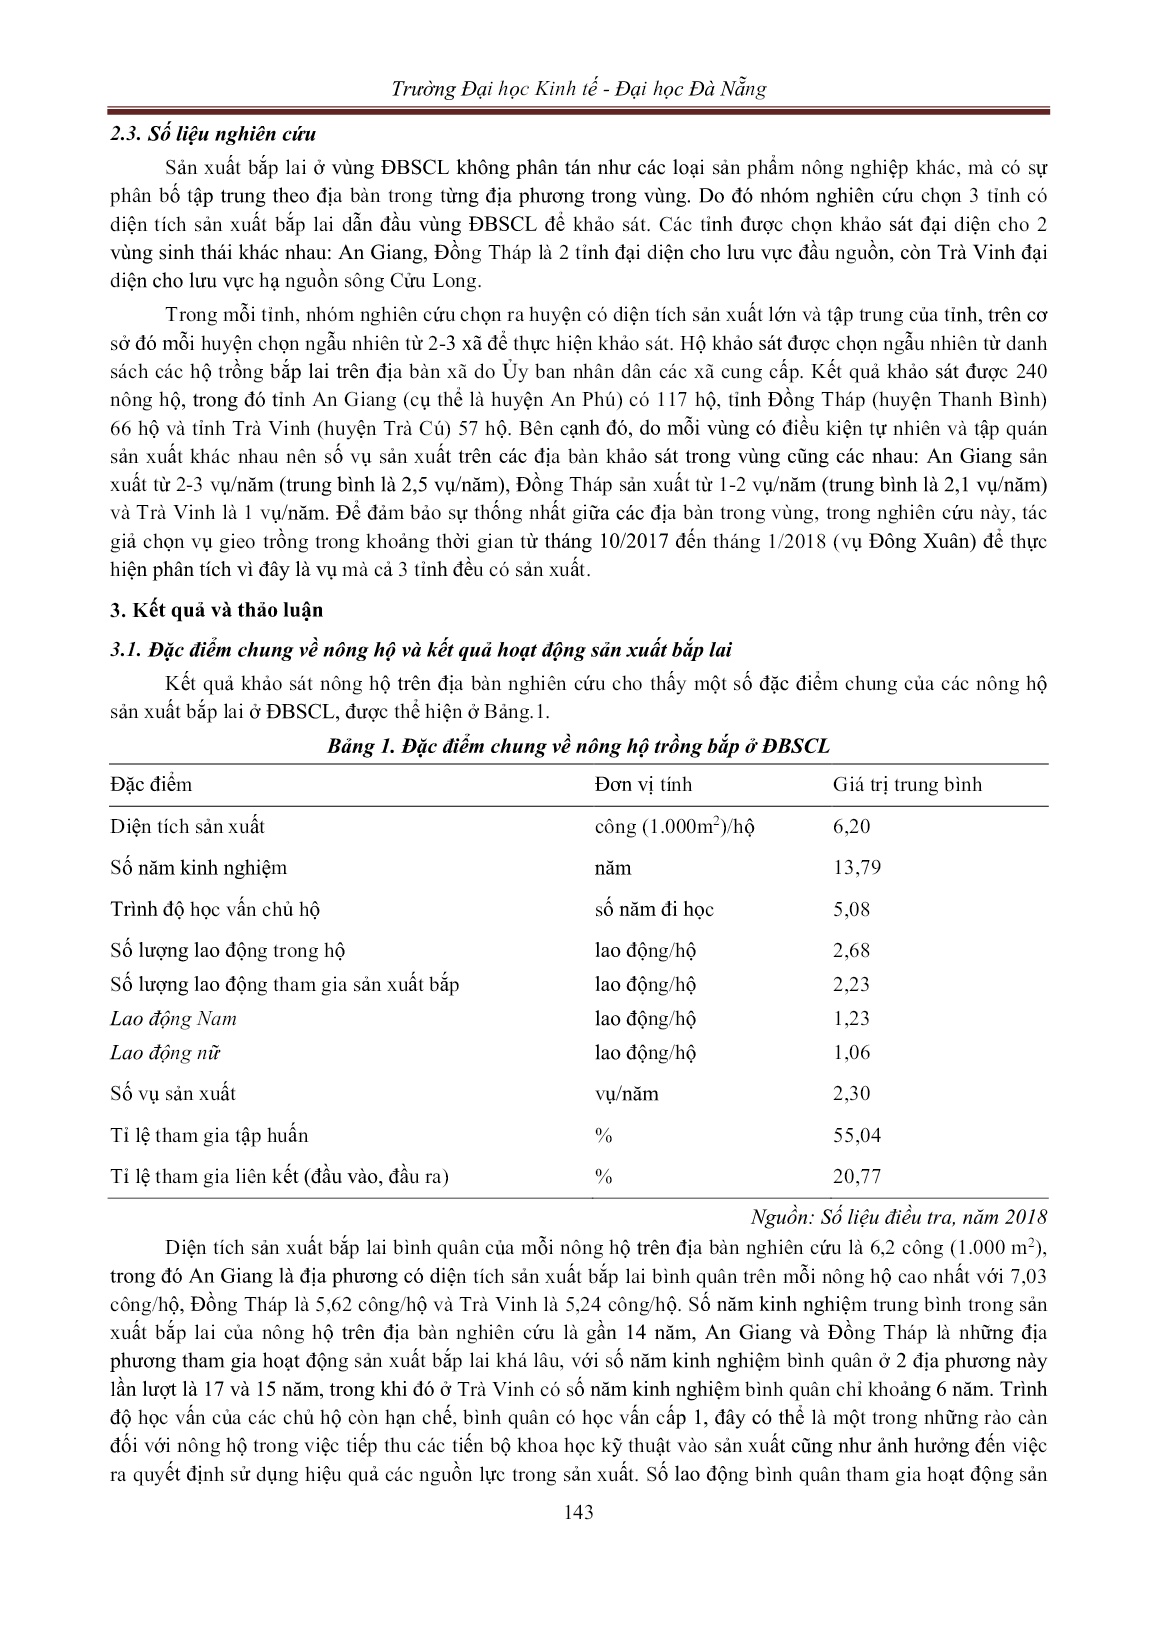 Hiệu quả sử dụng đầu vào trong sản xuất bắp lai ở đồng bằng sông Cửu Long: Ứng dụng phương pháp ước lượng một bước trang 5